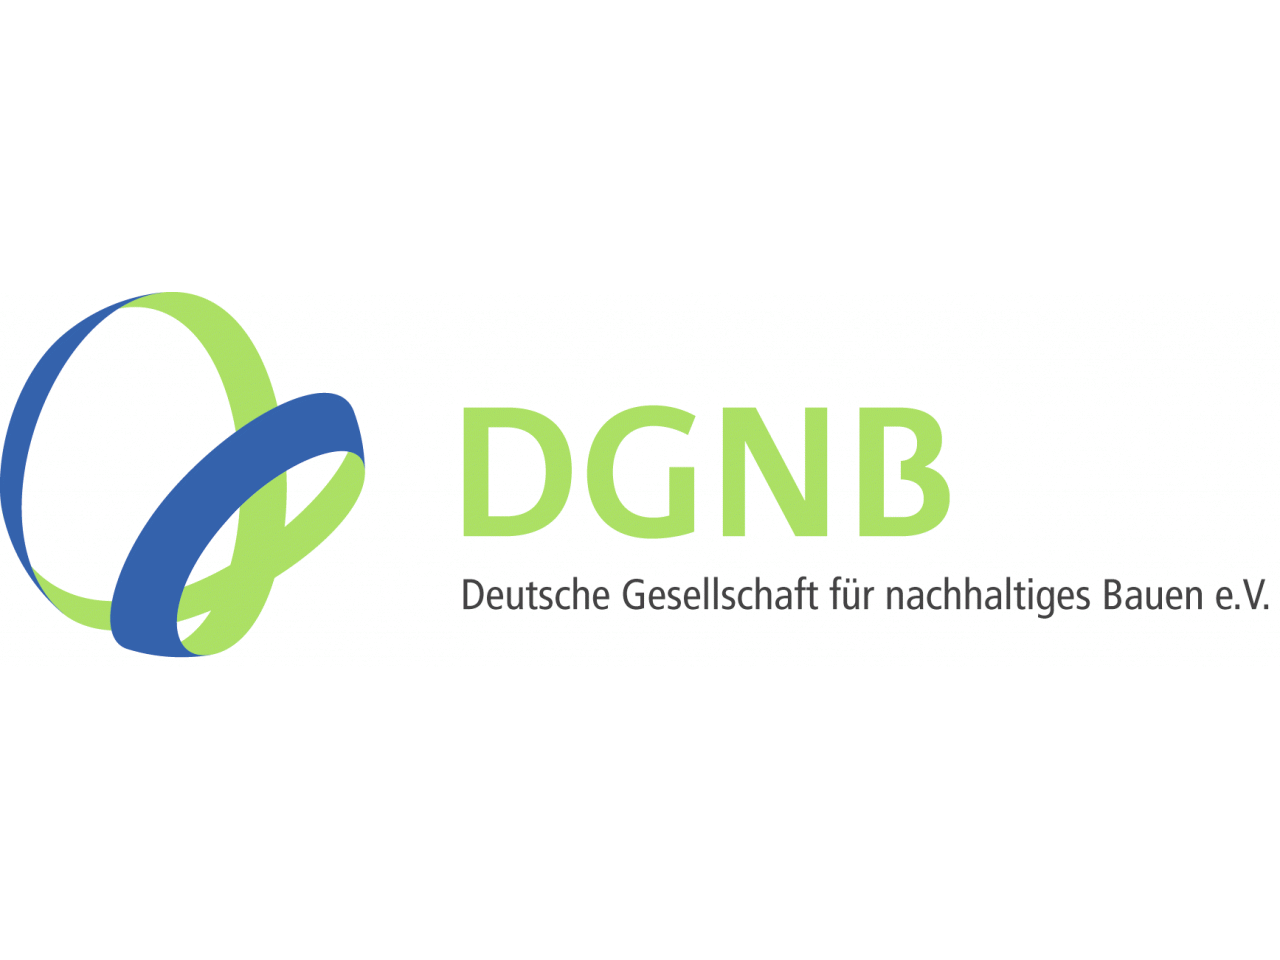 Deutsche Gesellschaft für nachhaltiges Bauen e.V.